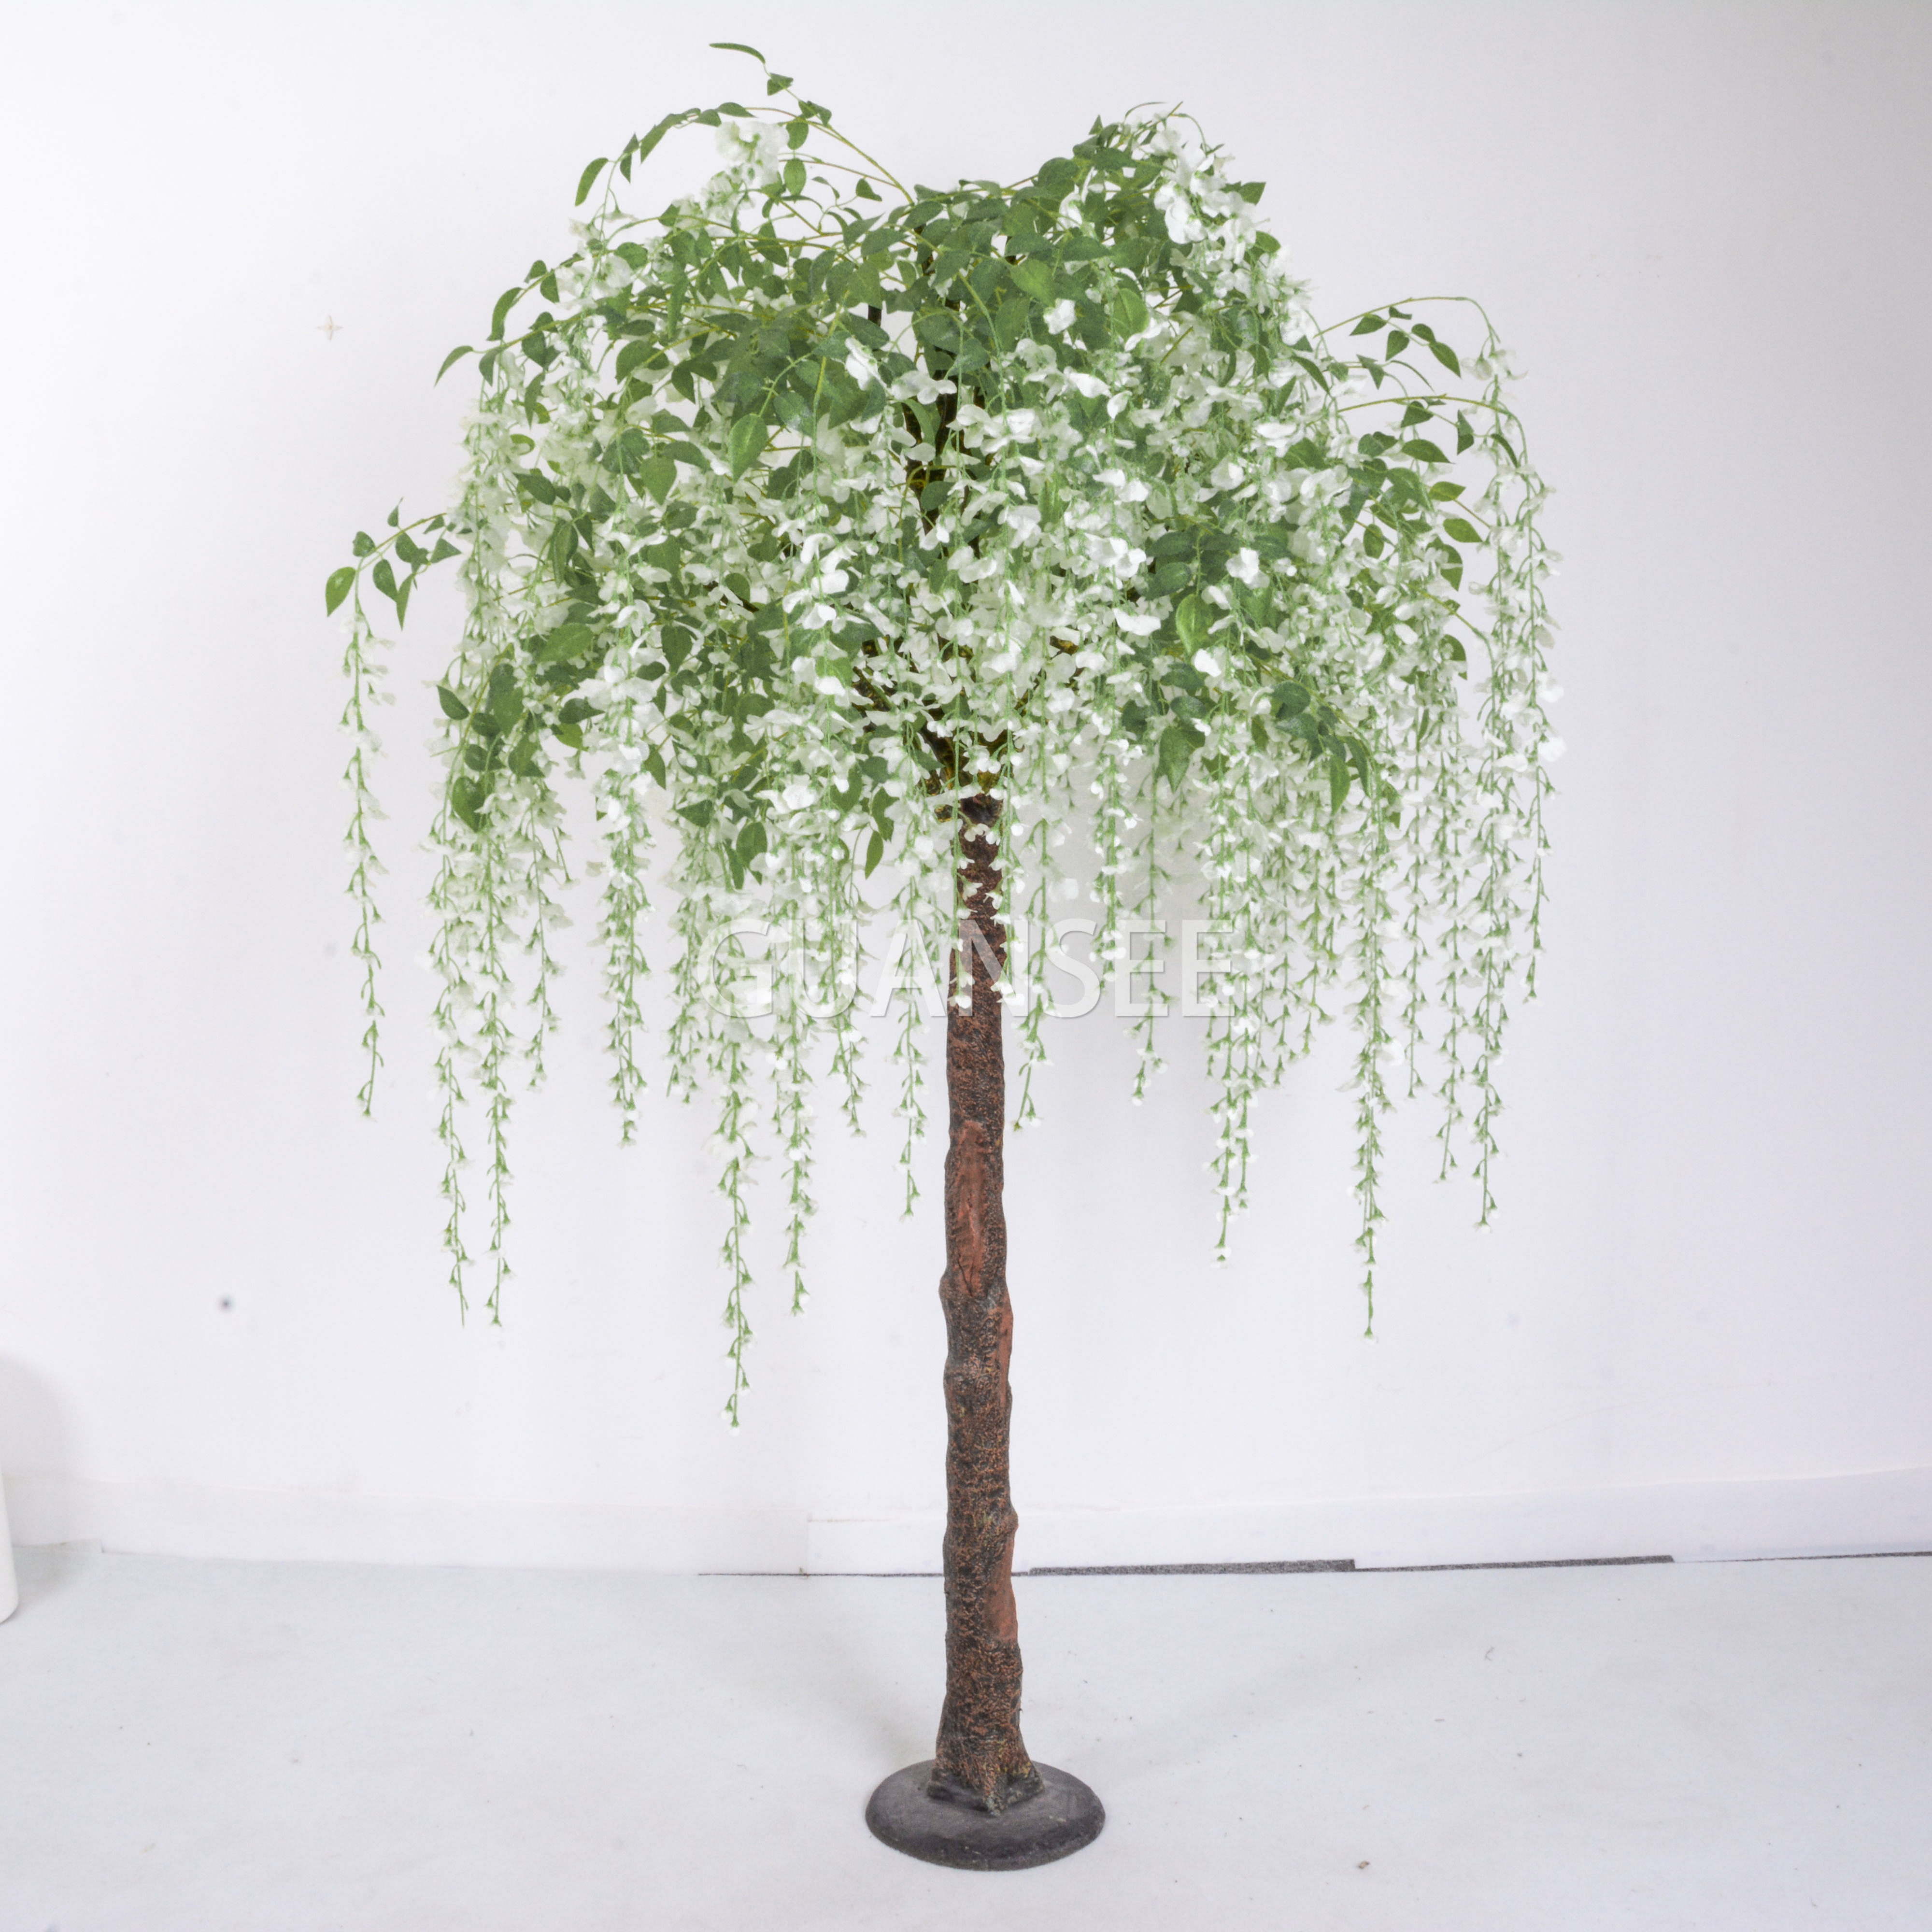 Hot populêre keunstmjittige wisteria blommen beam foar dekoraasje